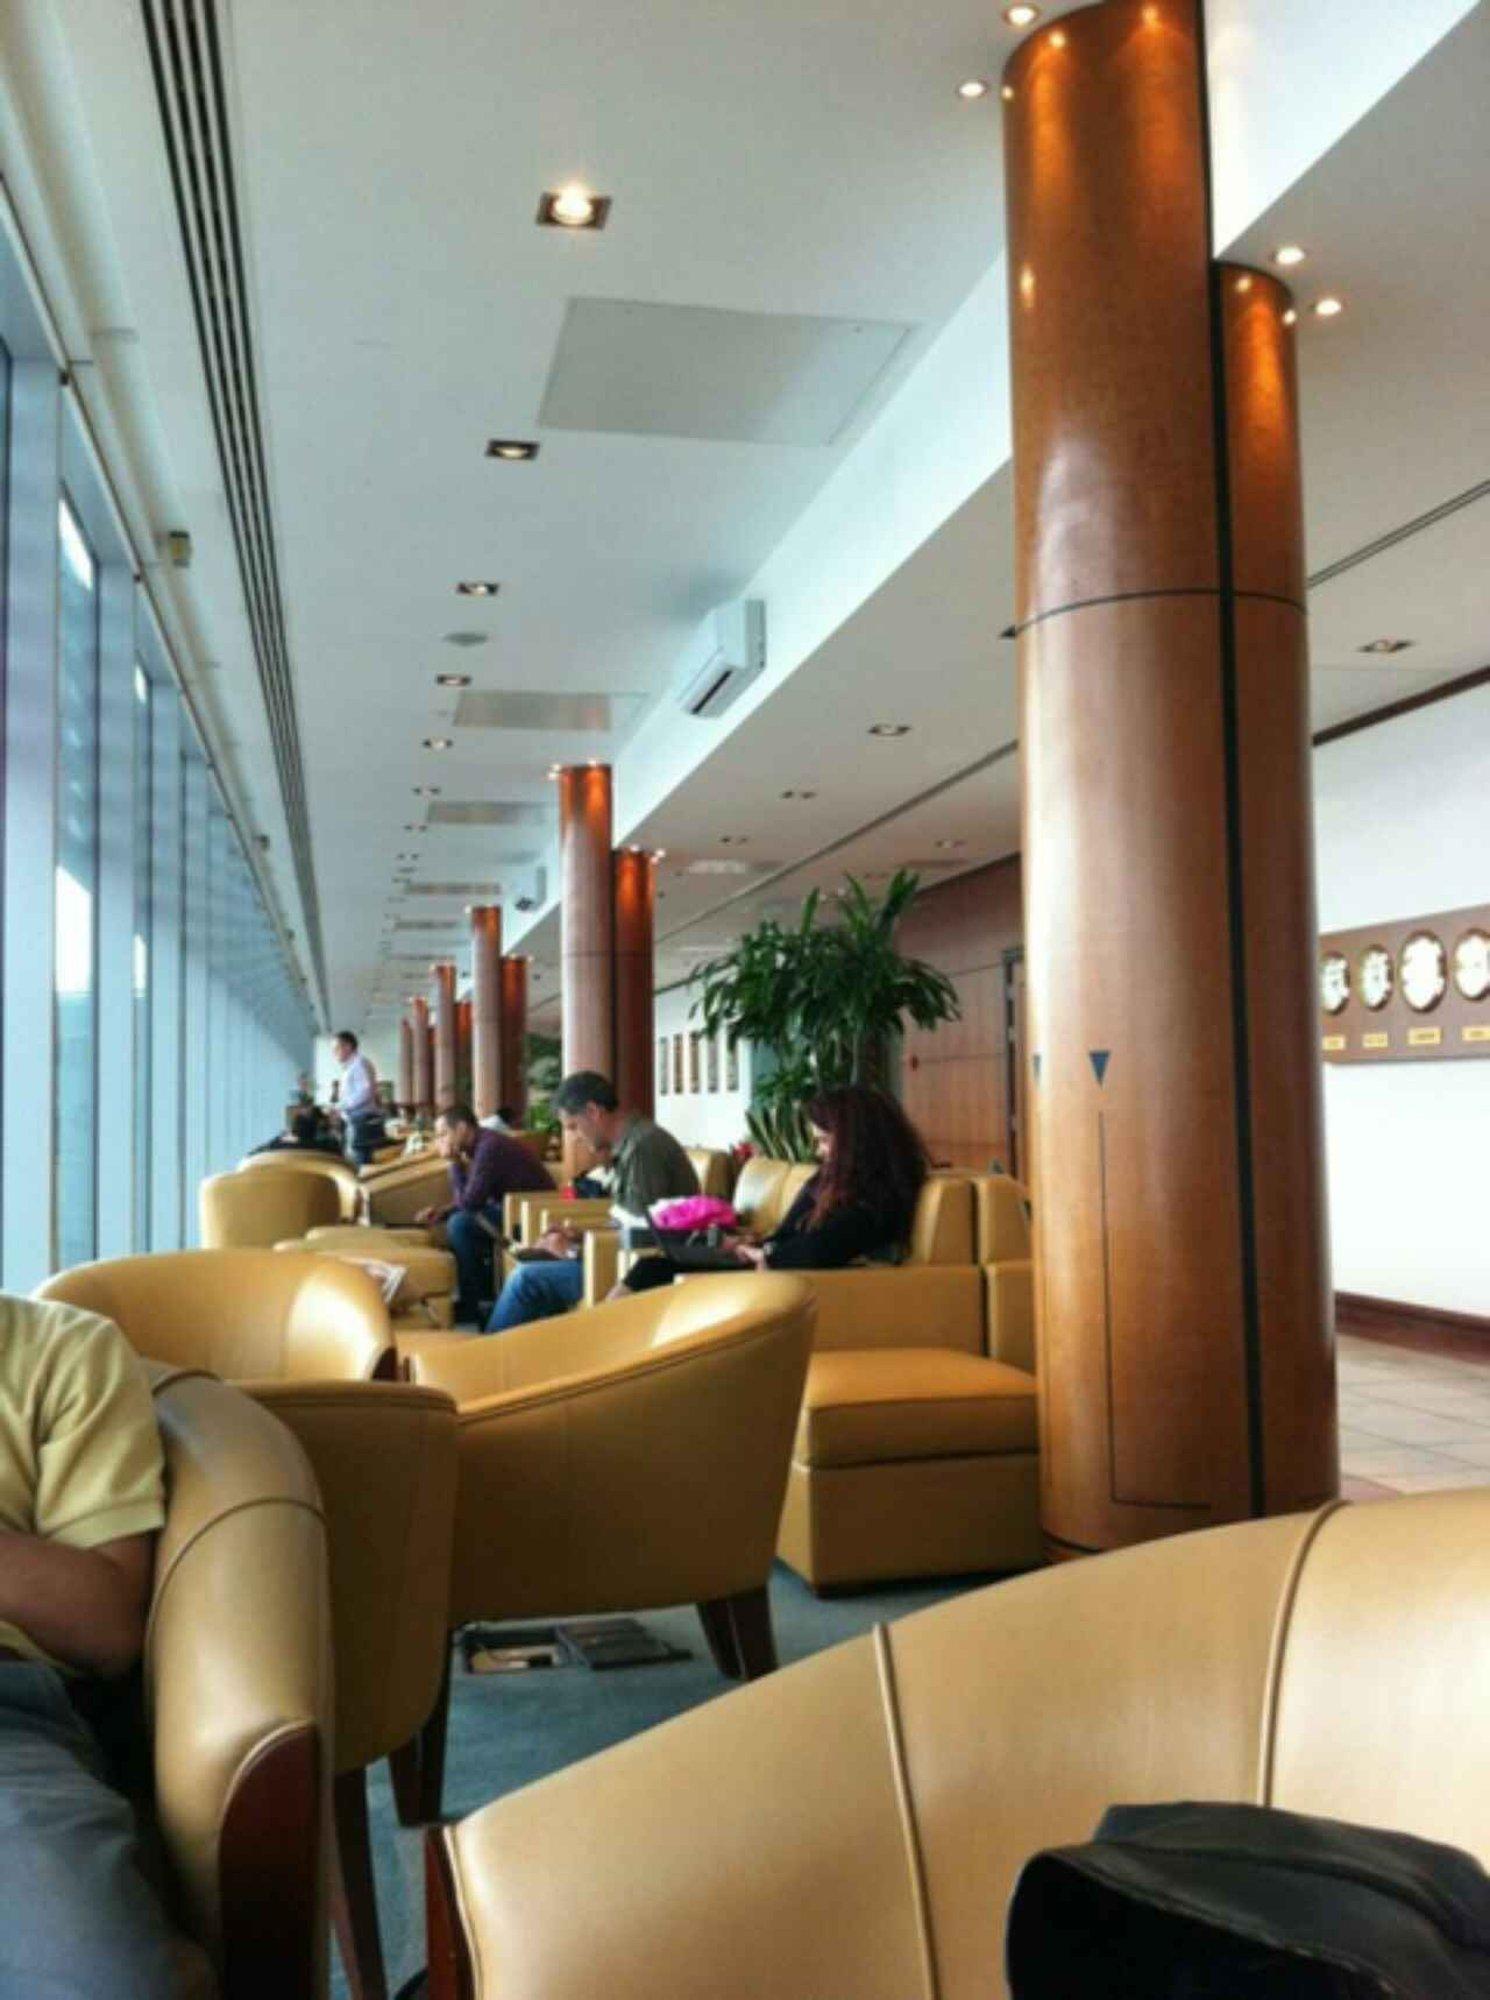 The Emirates Lounge image 9 of 10